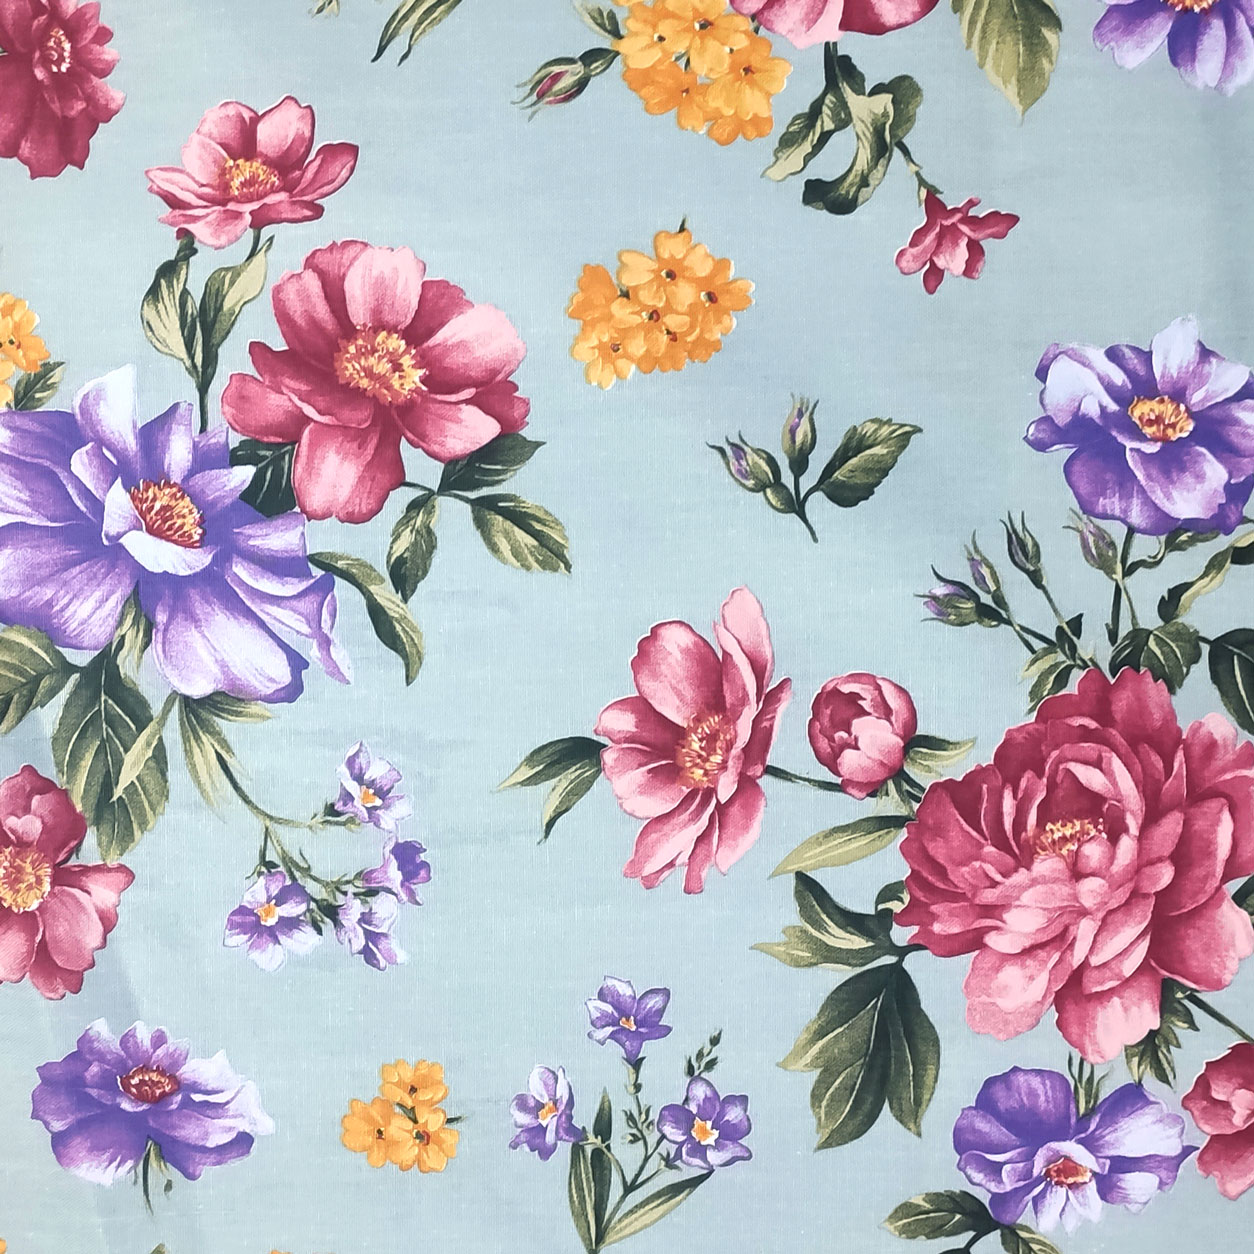 panama-tessuto-bouquet-fiori-sfondo-azzurro